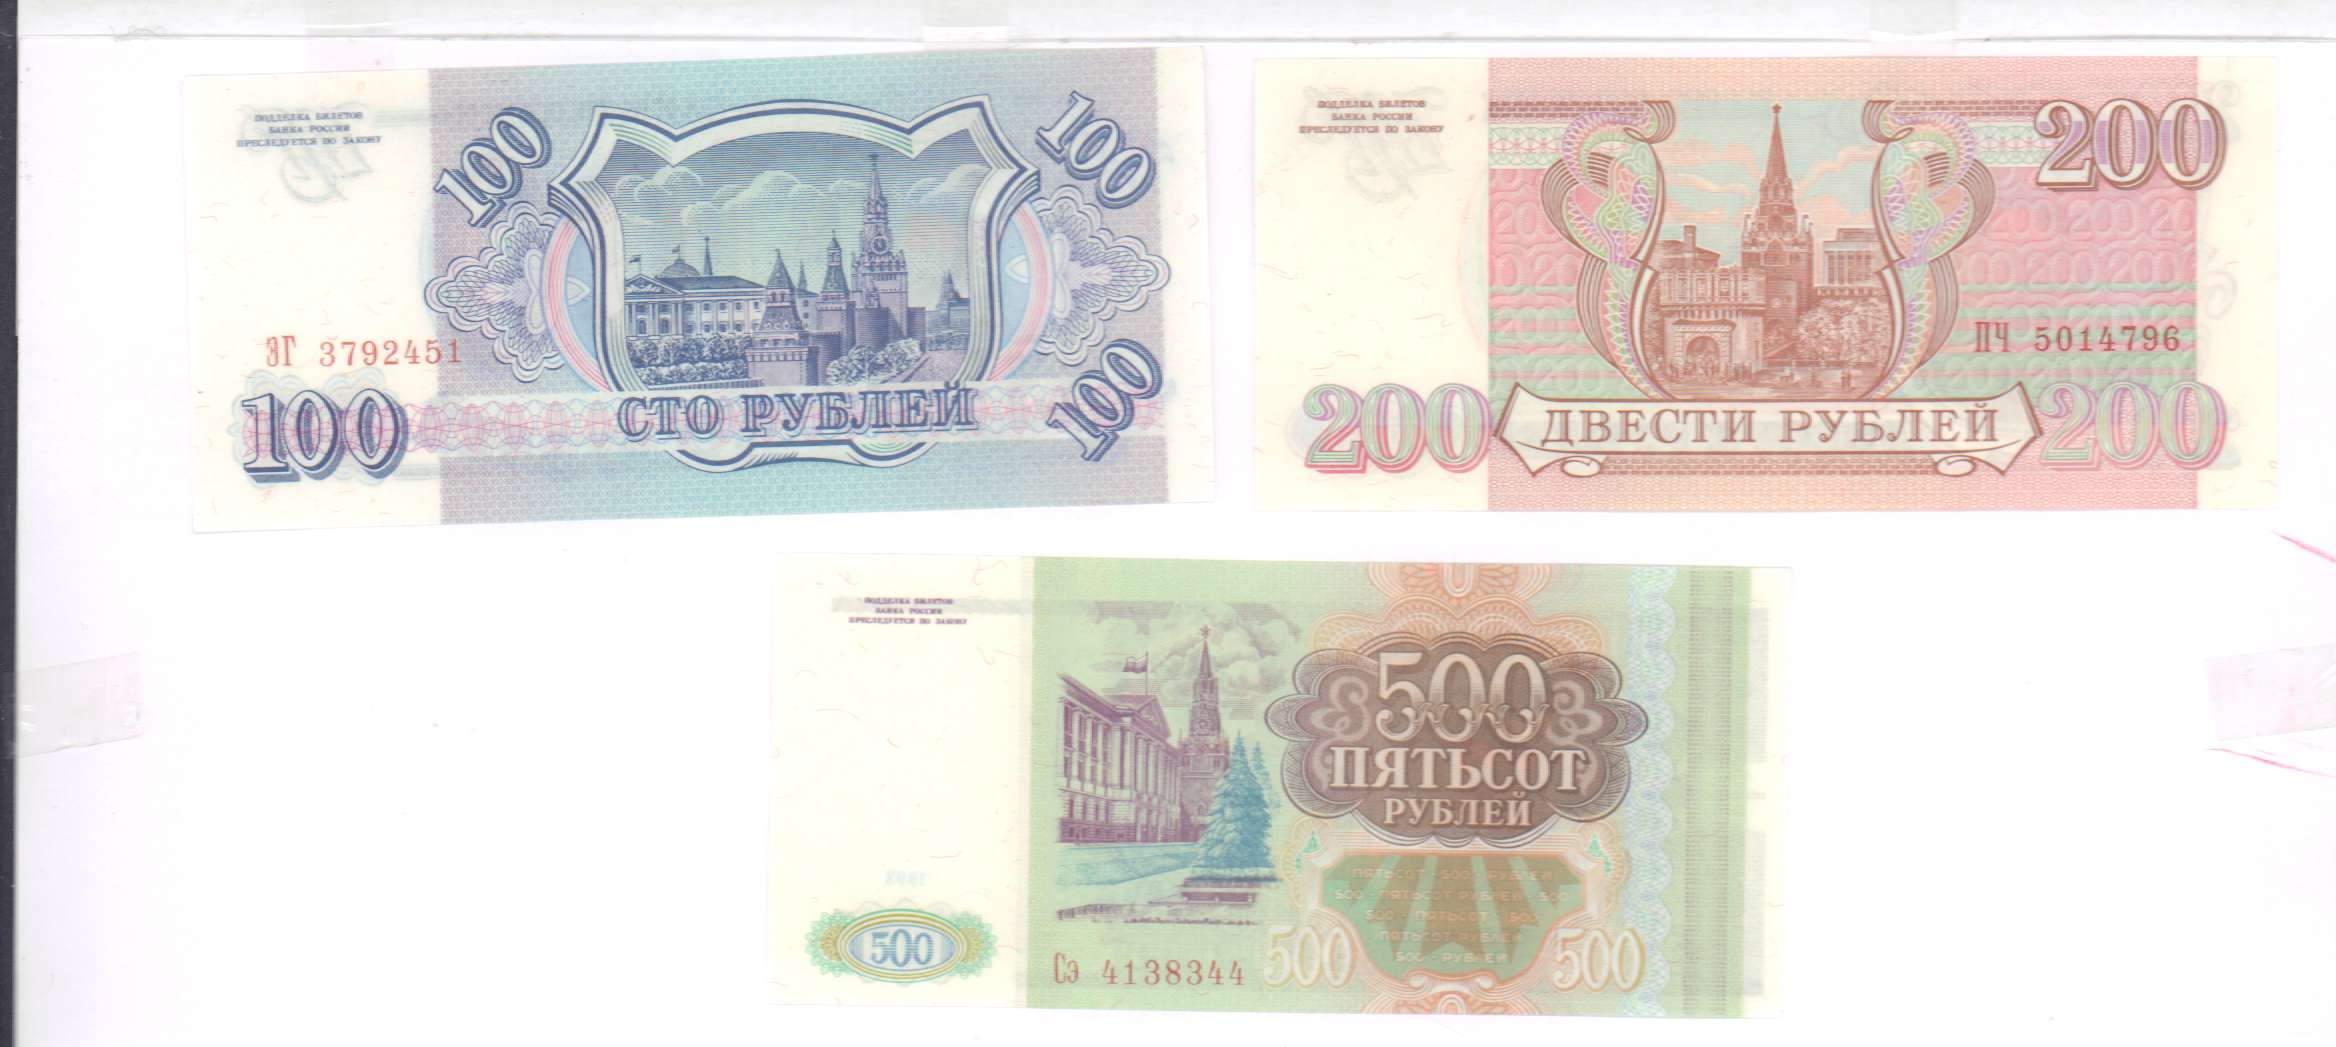 80 рублей 90. 100 Рублей 1993 Аверс-Аверс. 100 Рублей 3 штуки. 500 Рублей 3 штуки. Как выглядят билеты банка России с кюаркодом.